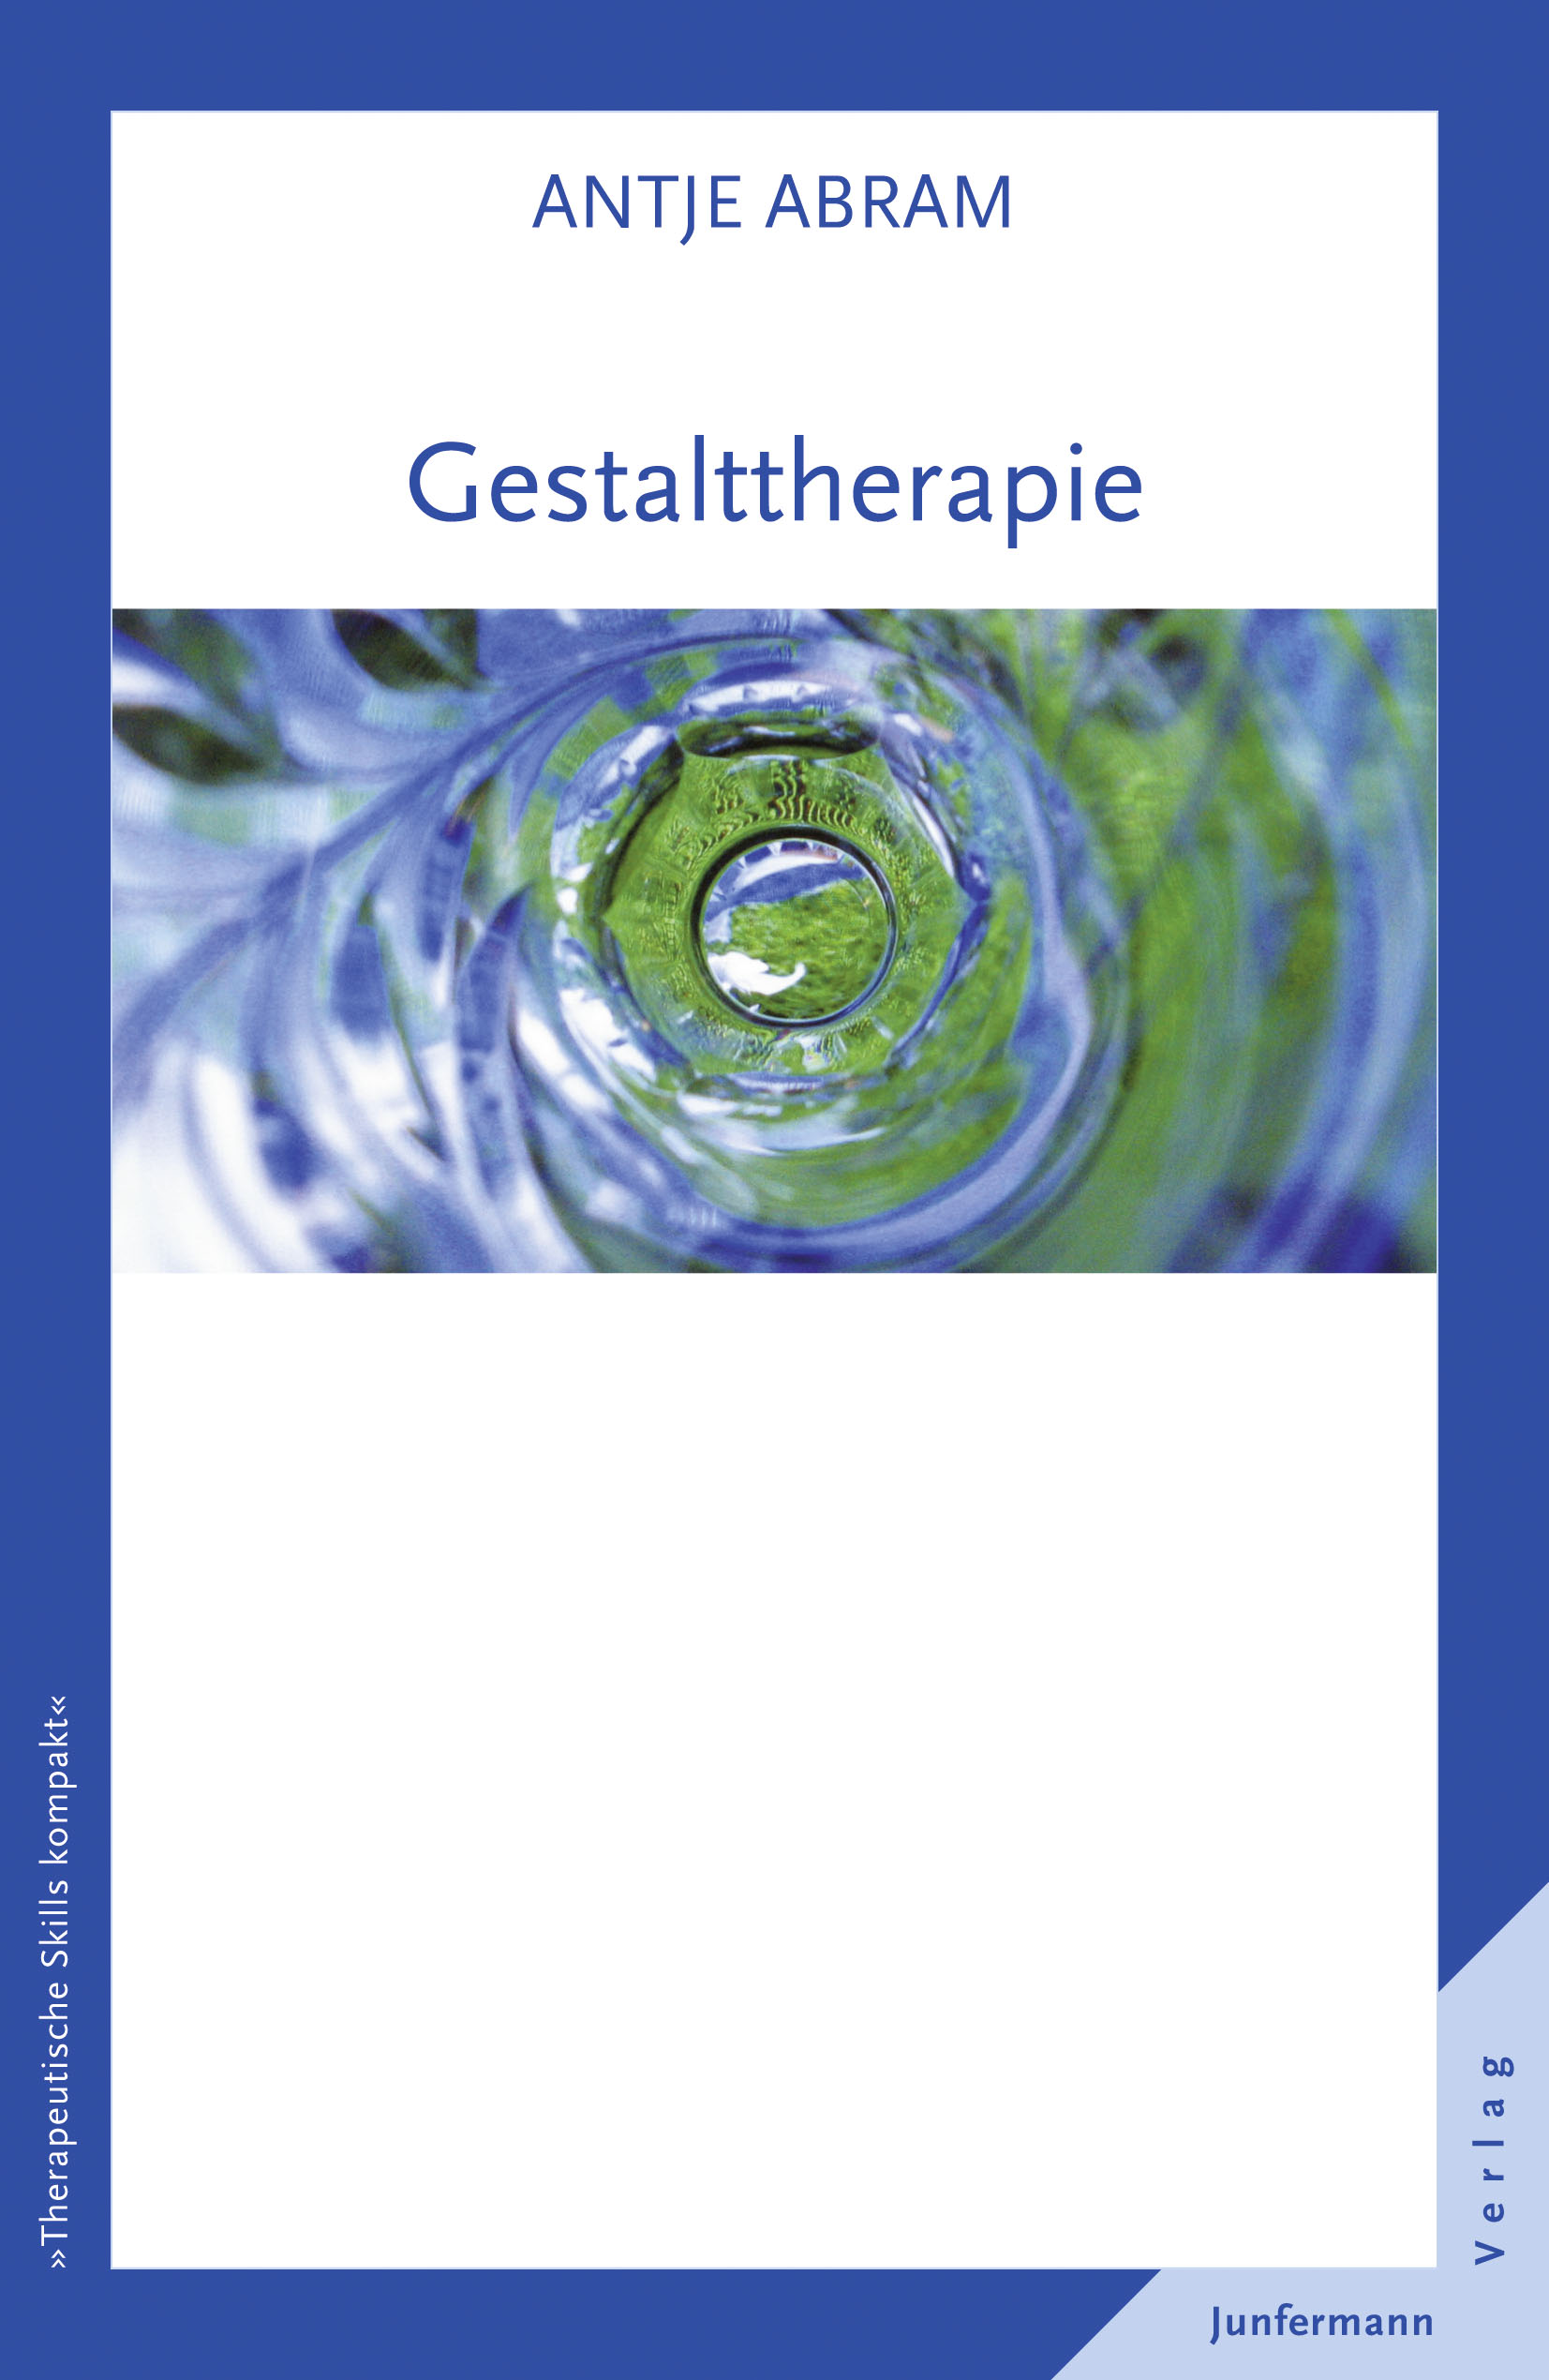 NEU Gestalttherapie Antje Abram 879522 - Zdjęcie 1 z 1